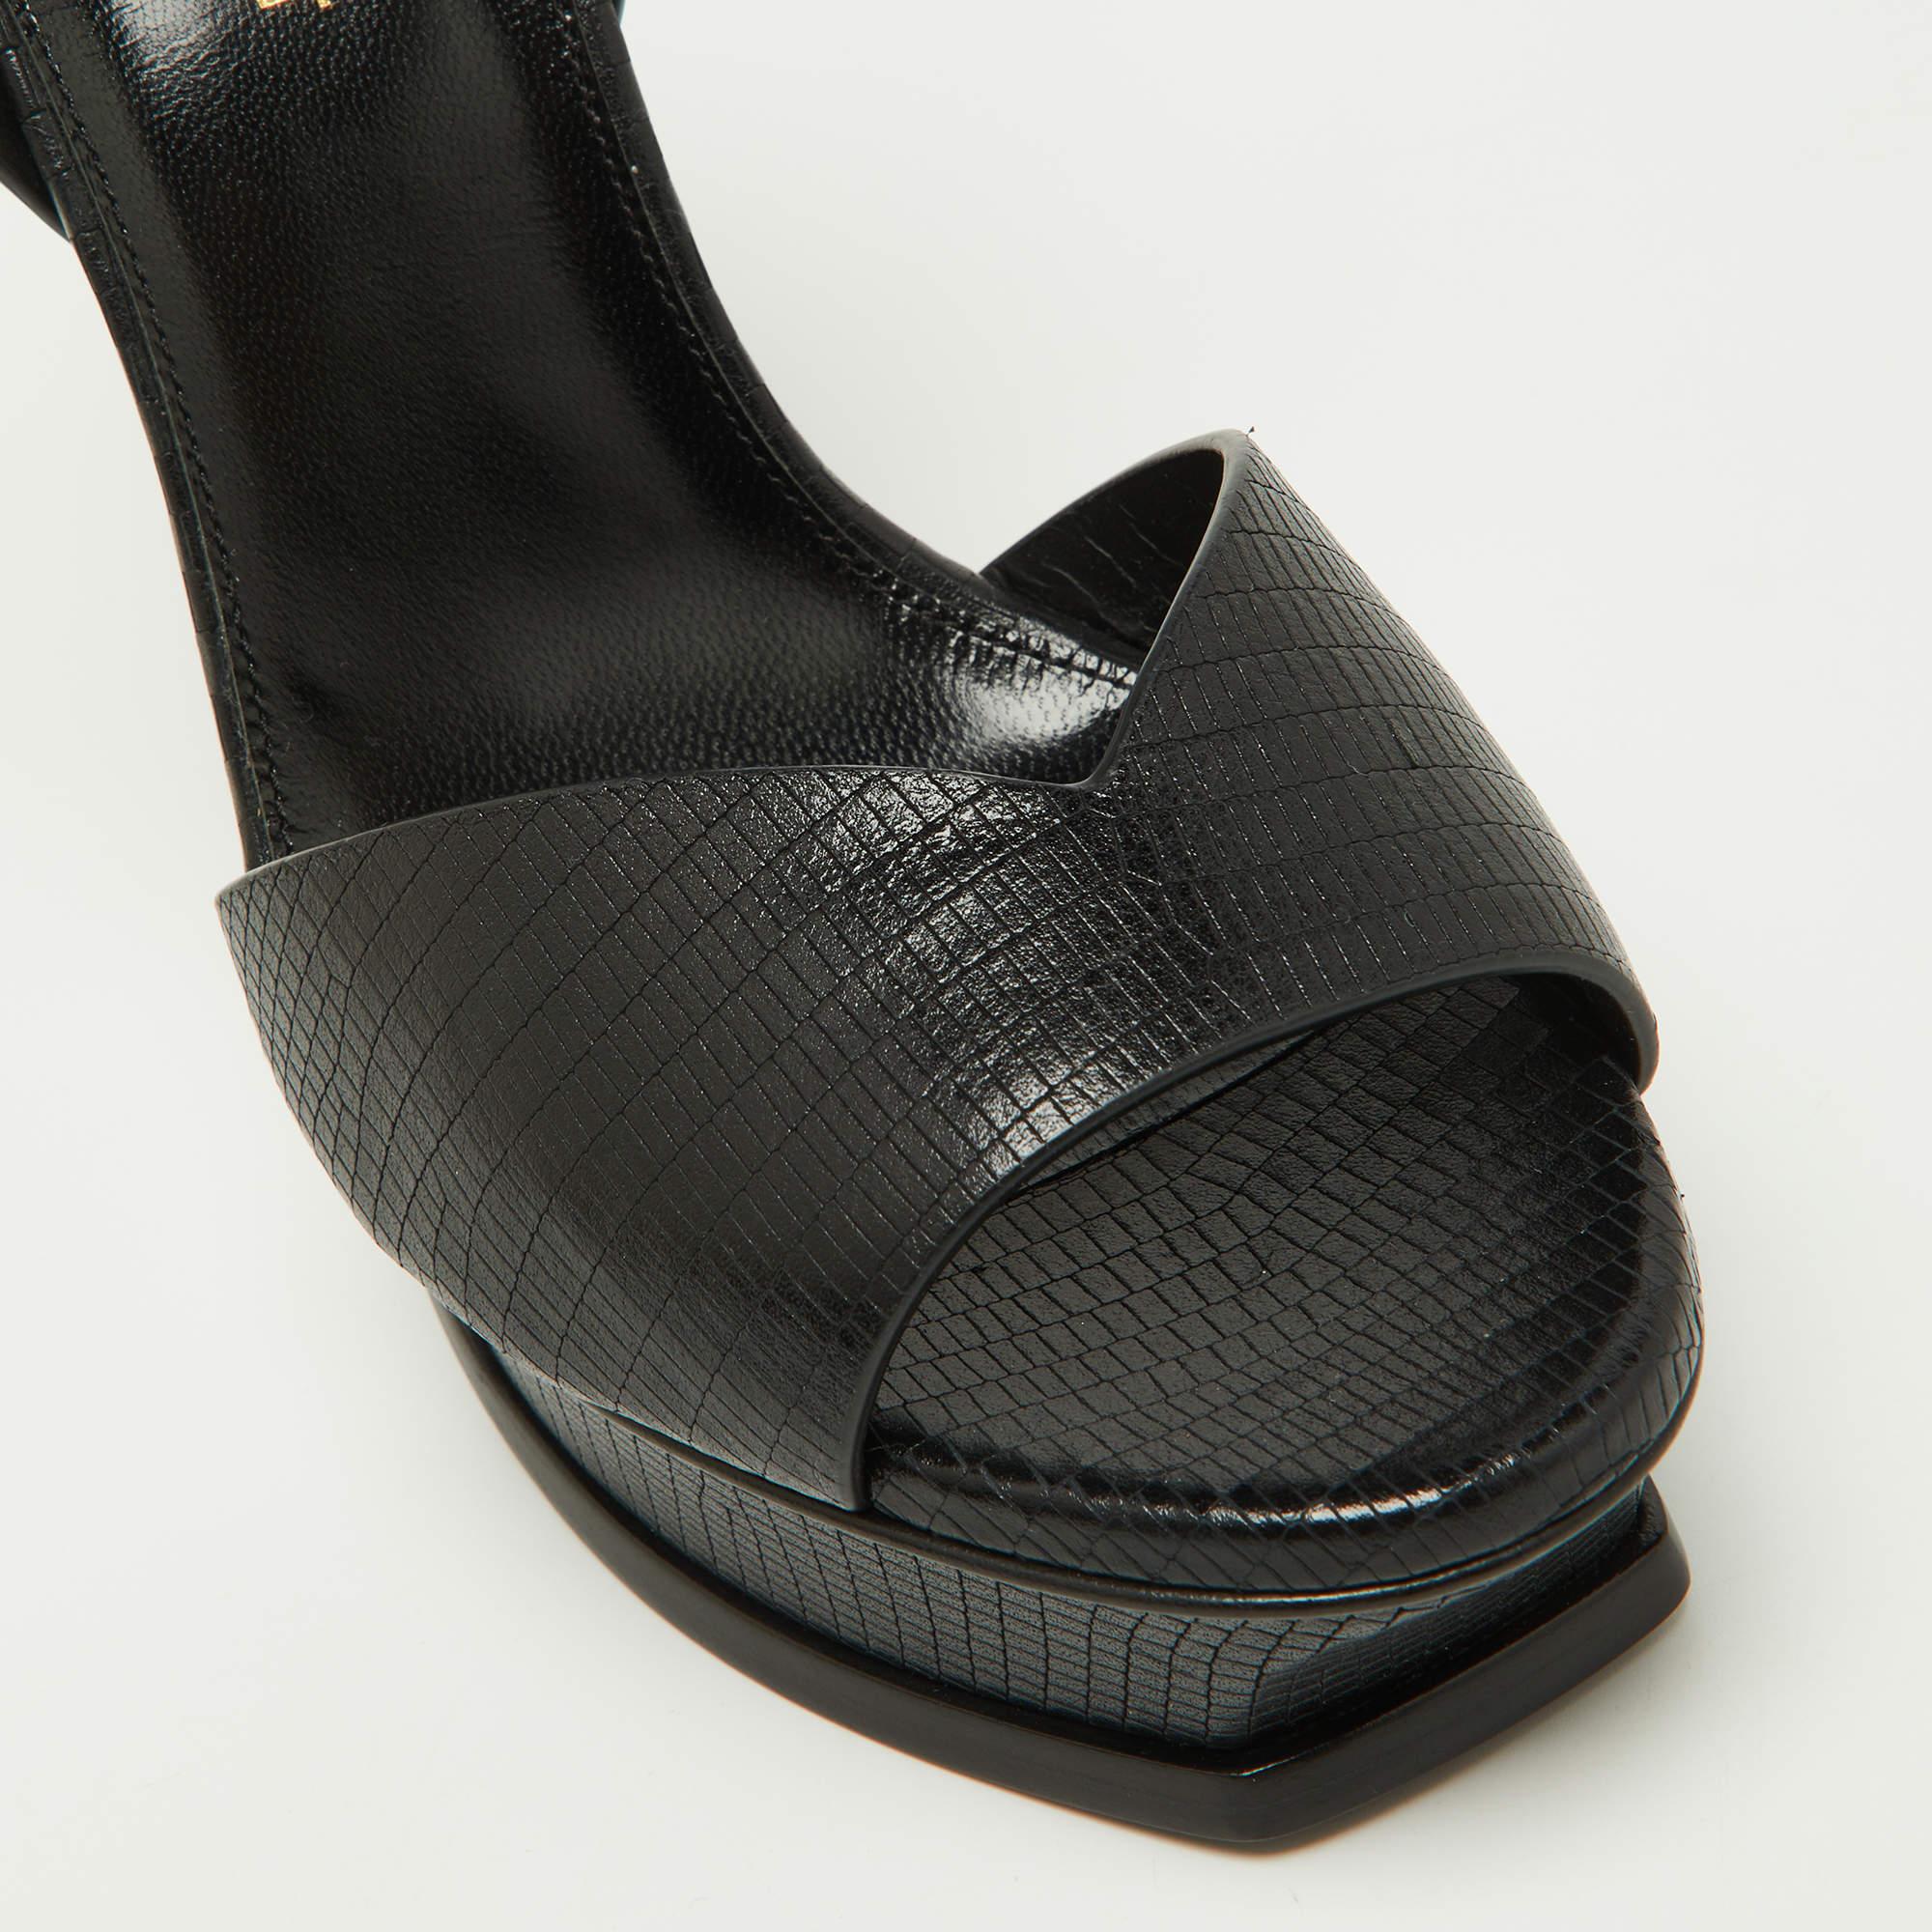 Saint Laurent Black Leather Tribute Ankle Strap Sandals Size 38 2